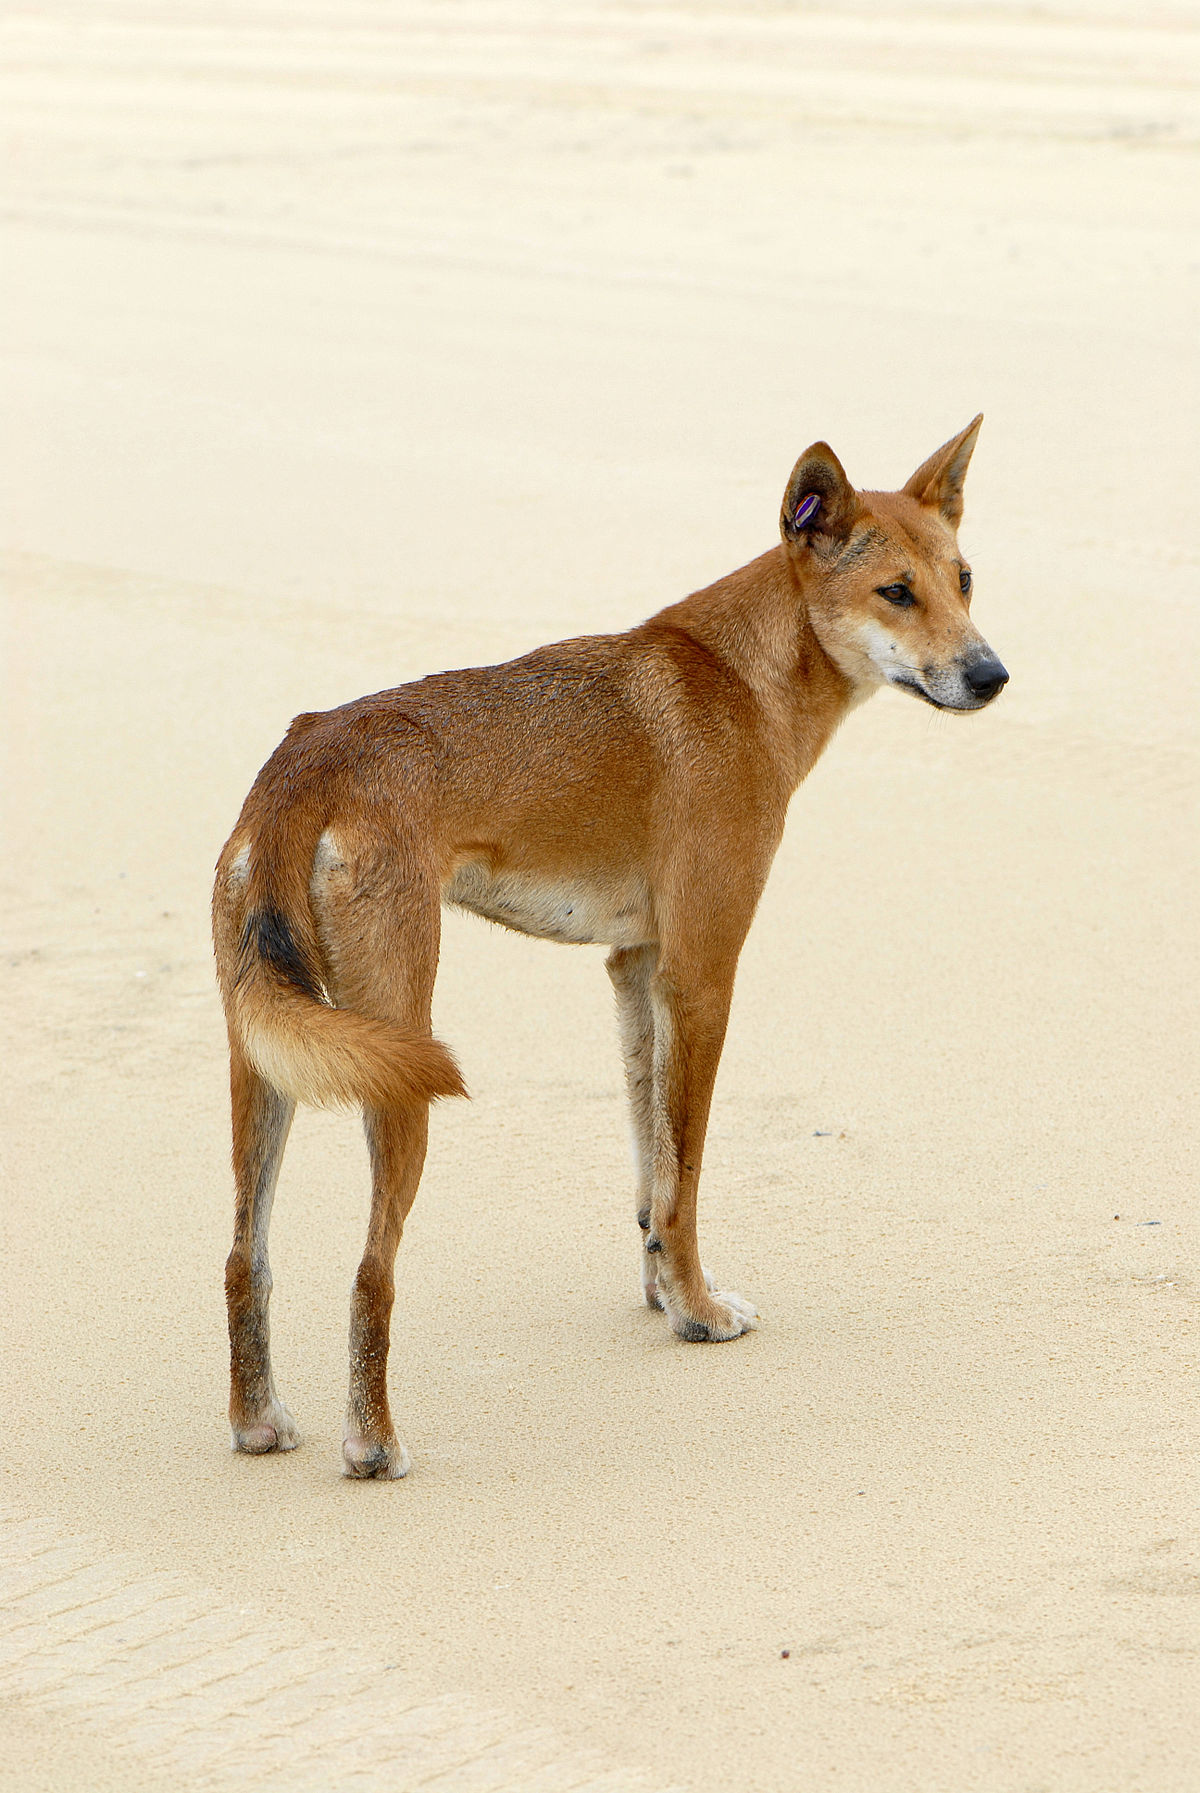 Hãy khám phá Canis lupus dingo - một loài chó mãnh liệt và rất đẹp để vẽ! Với bộ lông nâu và cách vẽ tinh tế, hình ảnh Canis lupus dingo sẽ khiến bạn quan tâm và cảm thấy hào hứng với việc vẽ chú chó này.